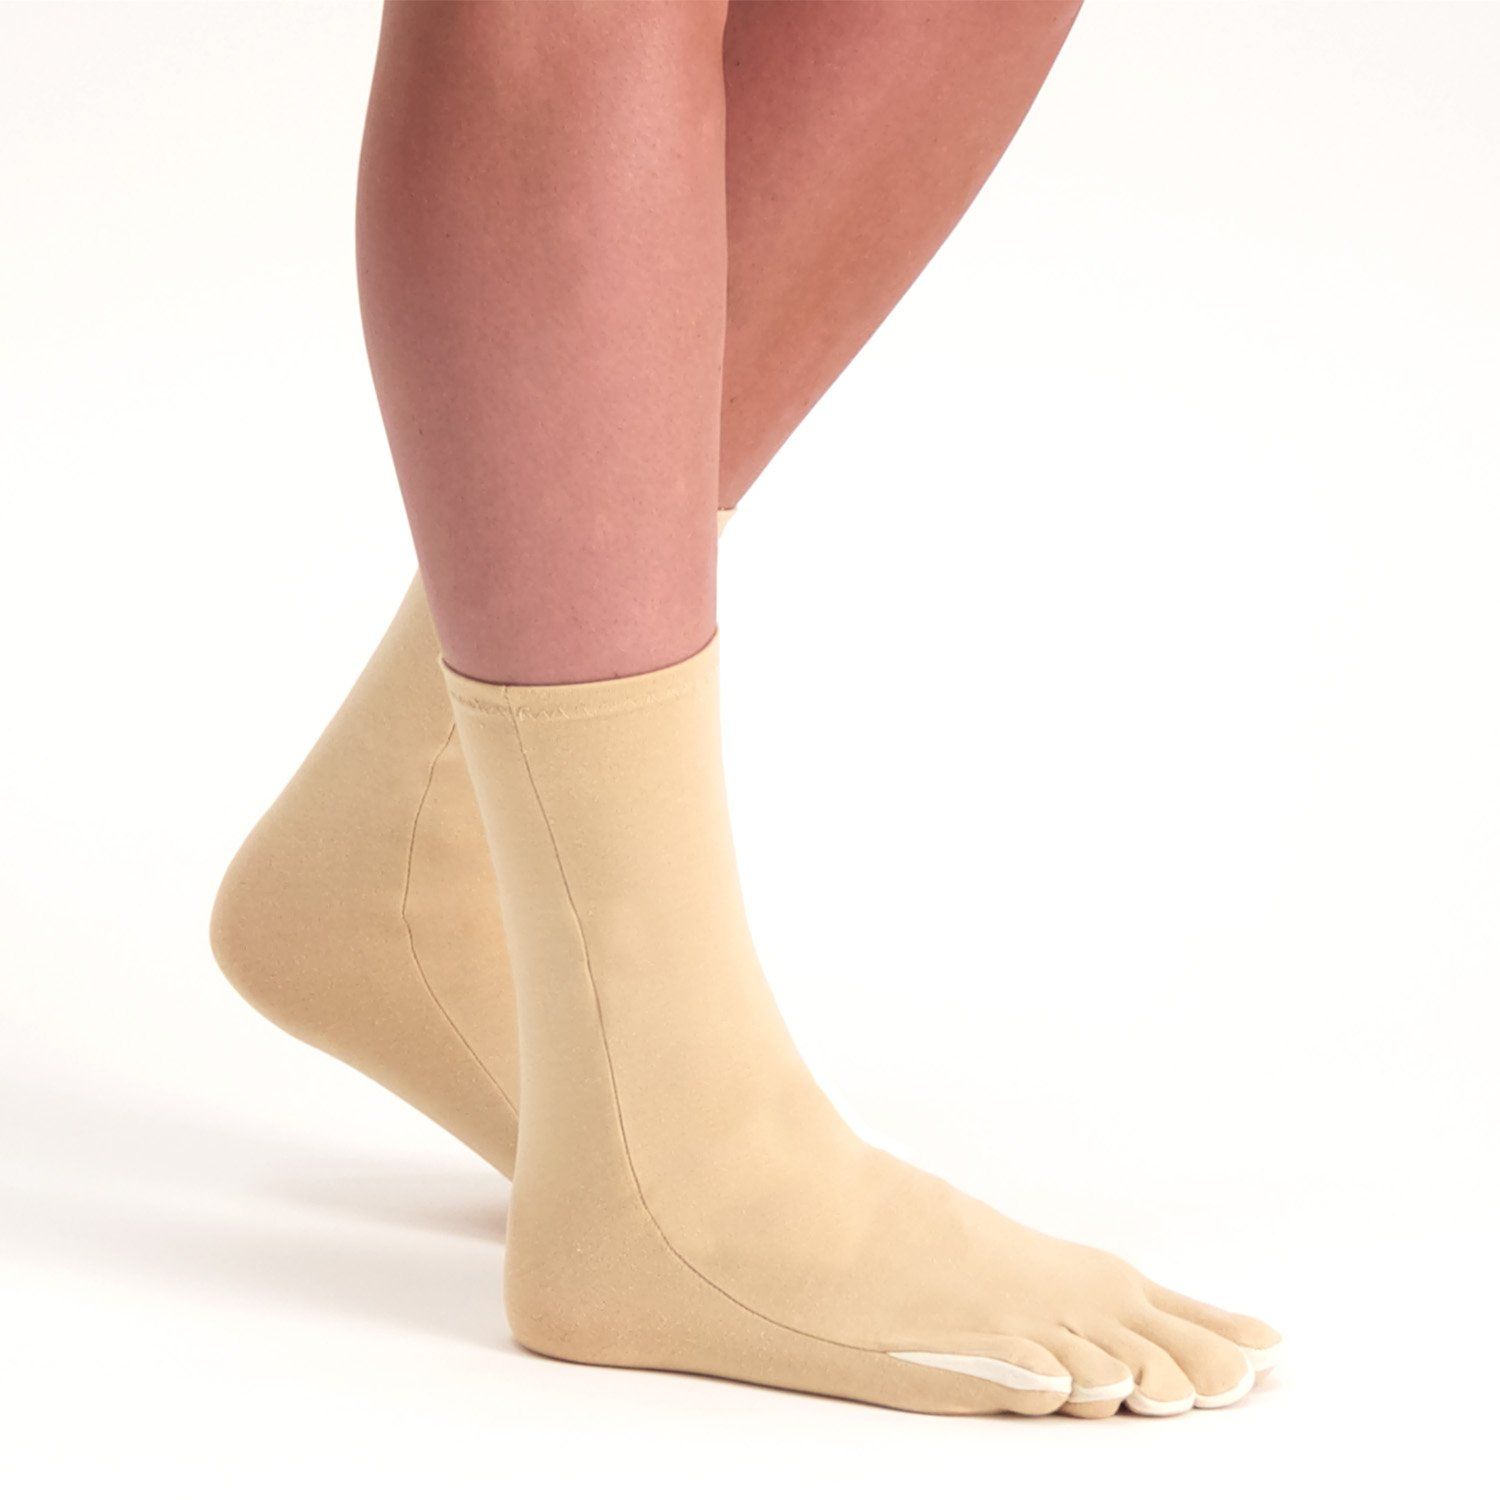 raynaud's disease socks worn on both feet